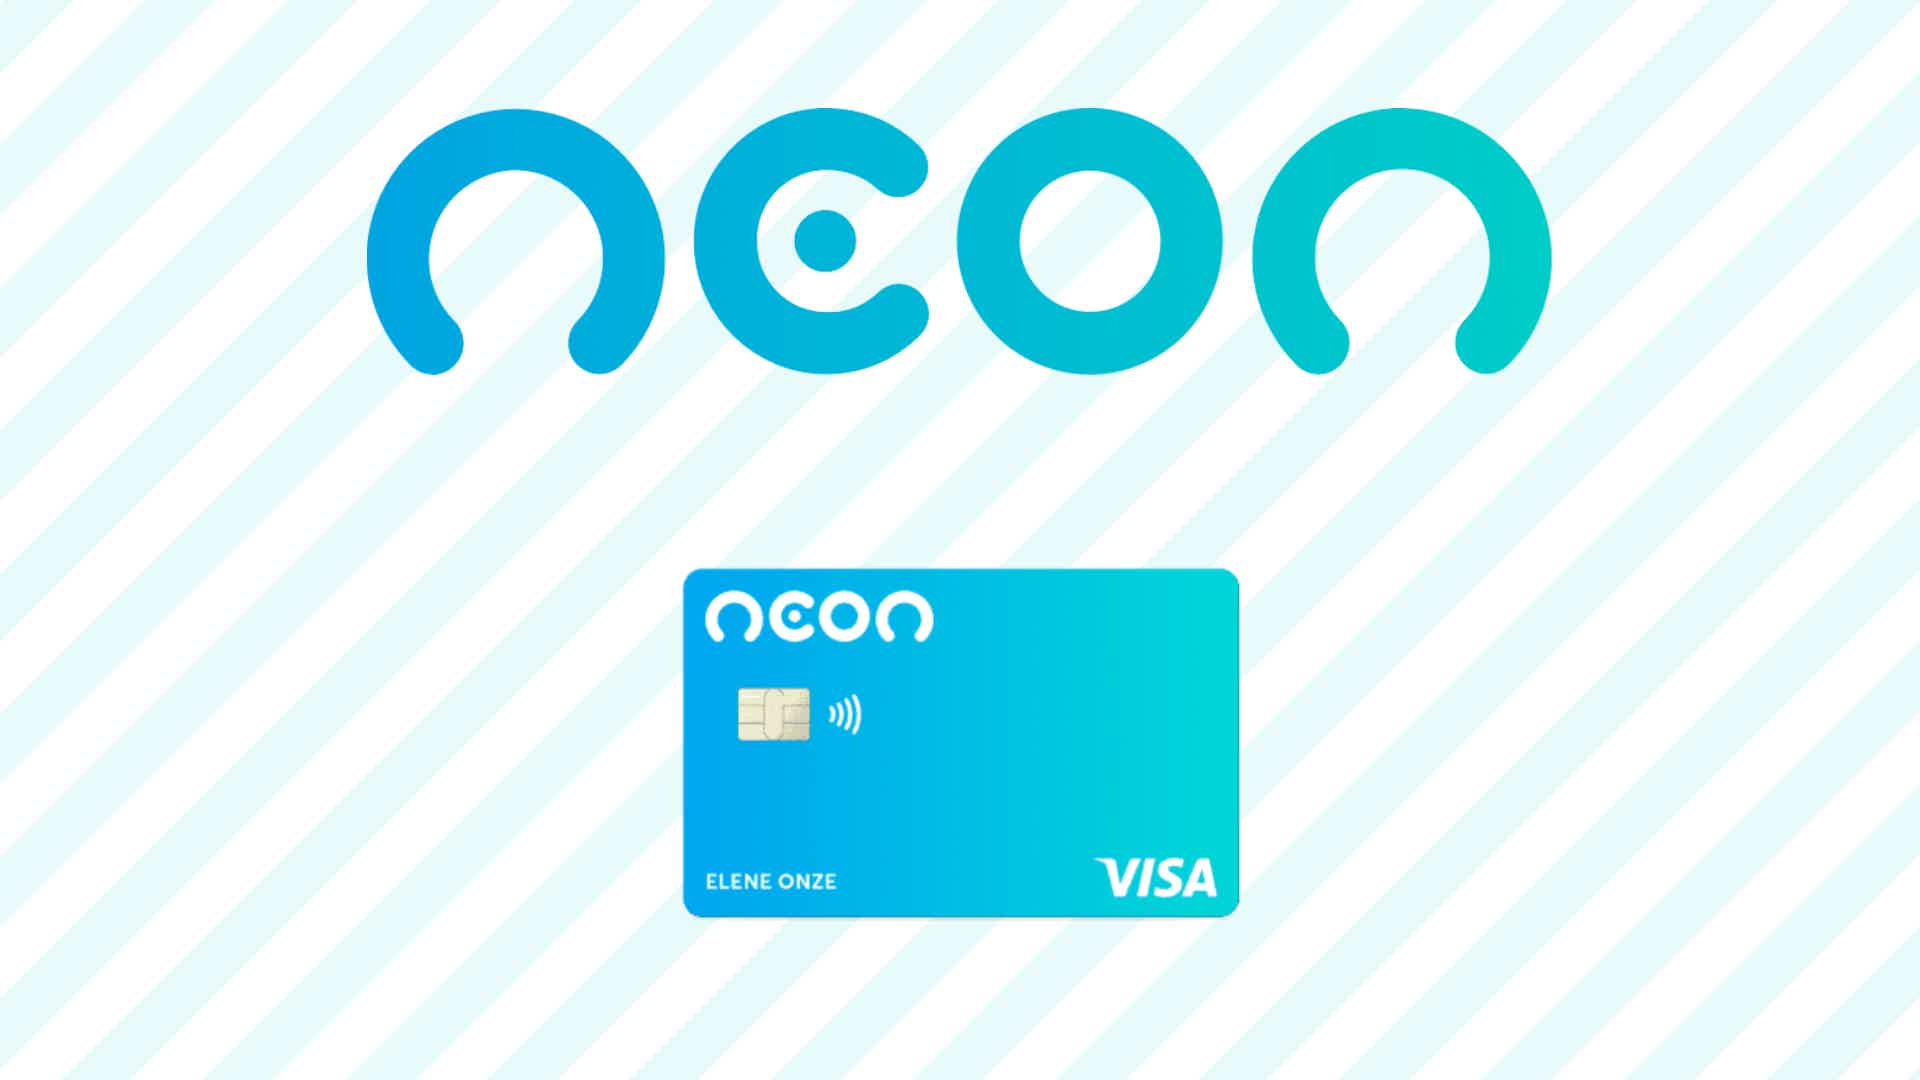 Cartão Neon faz parte da linha de serviços do banco digital. Fonte: Senhor Finanças / Neon.